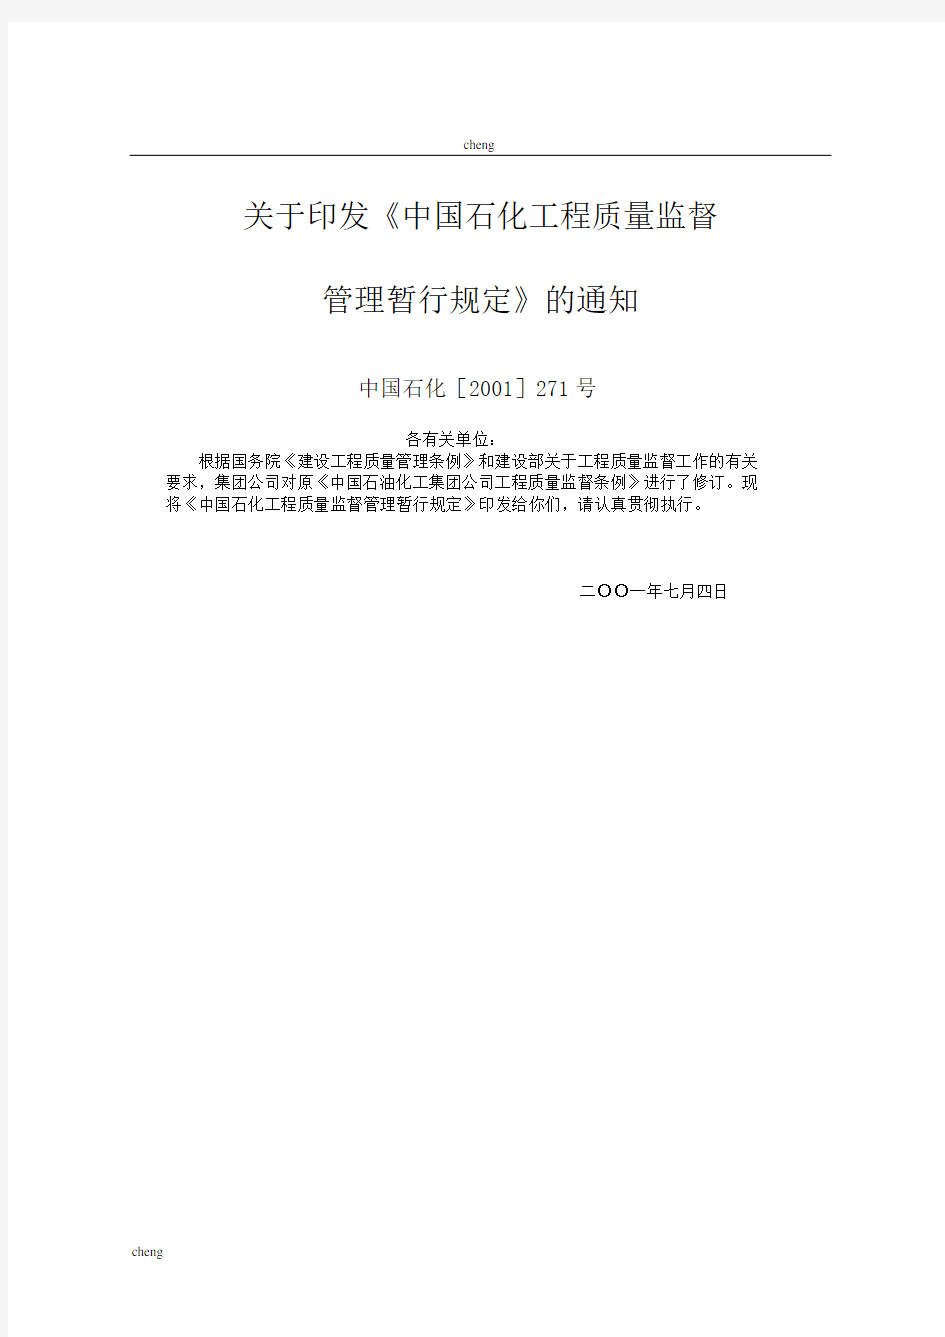 建筑中国石化《工程质量》监督管理暂行规定